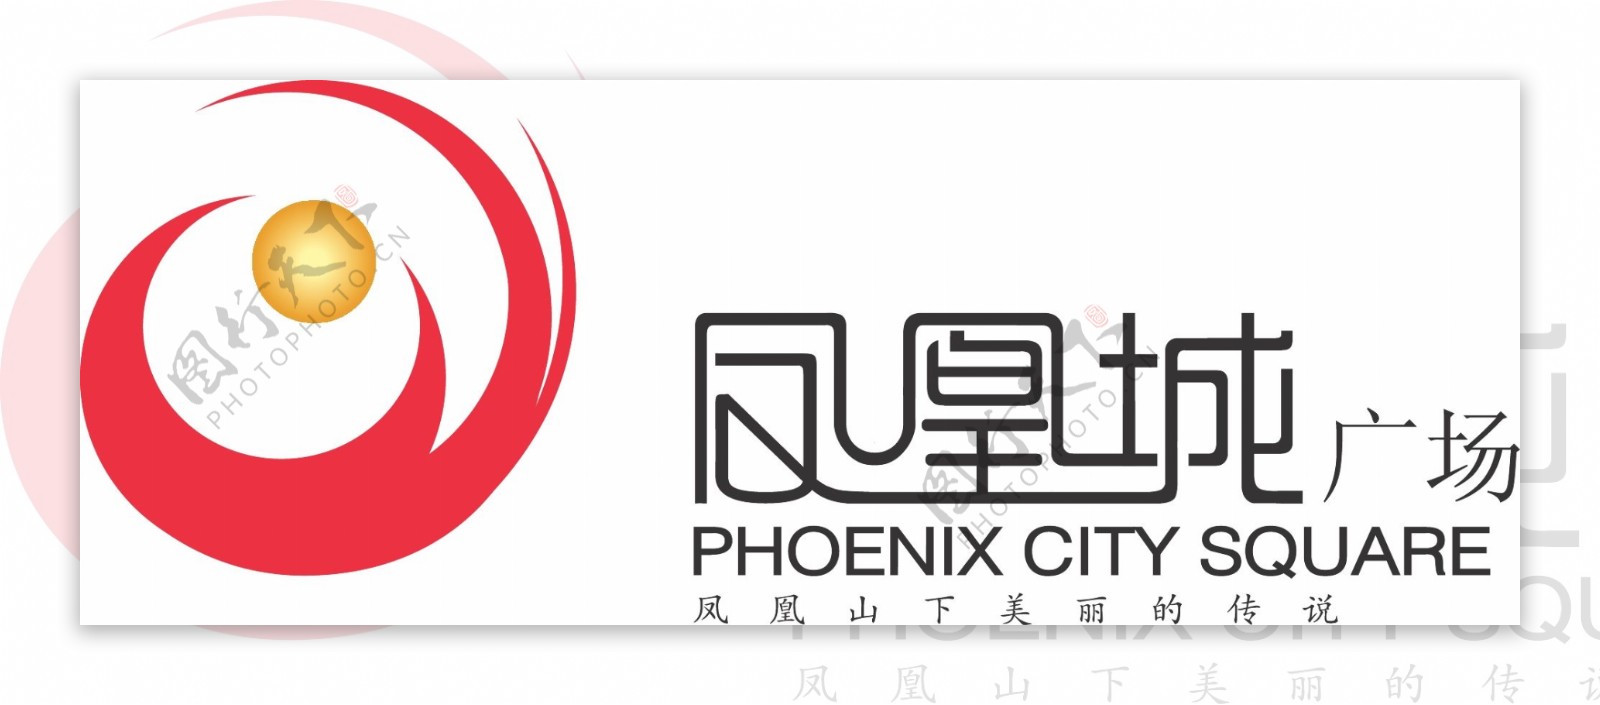 凤凰城logo矢量